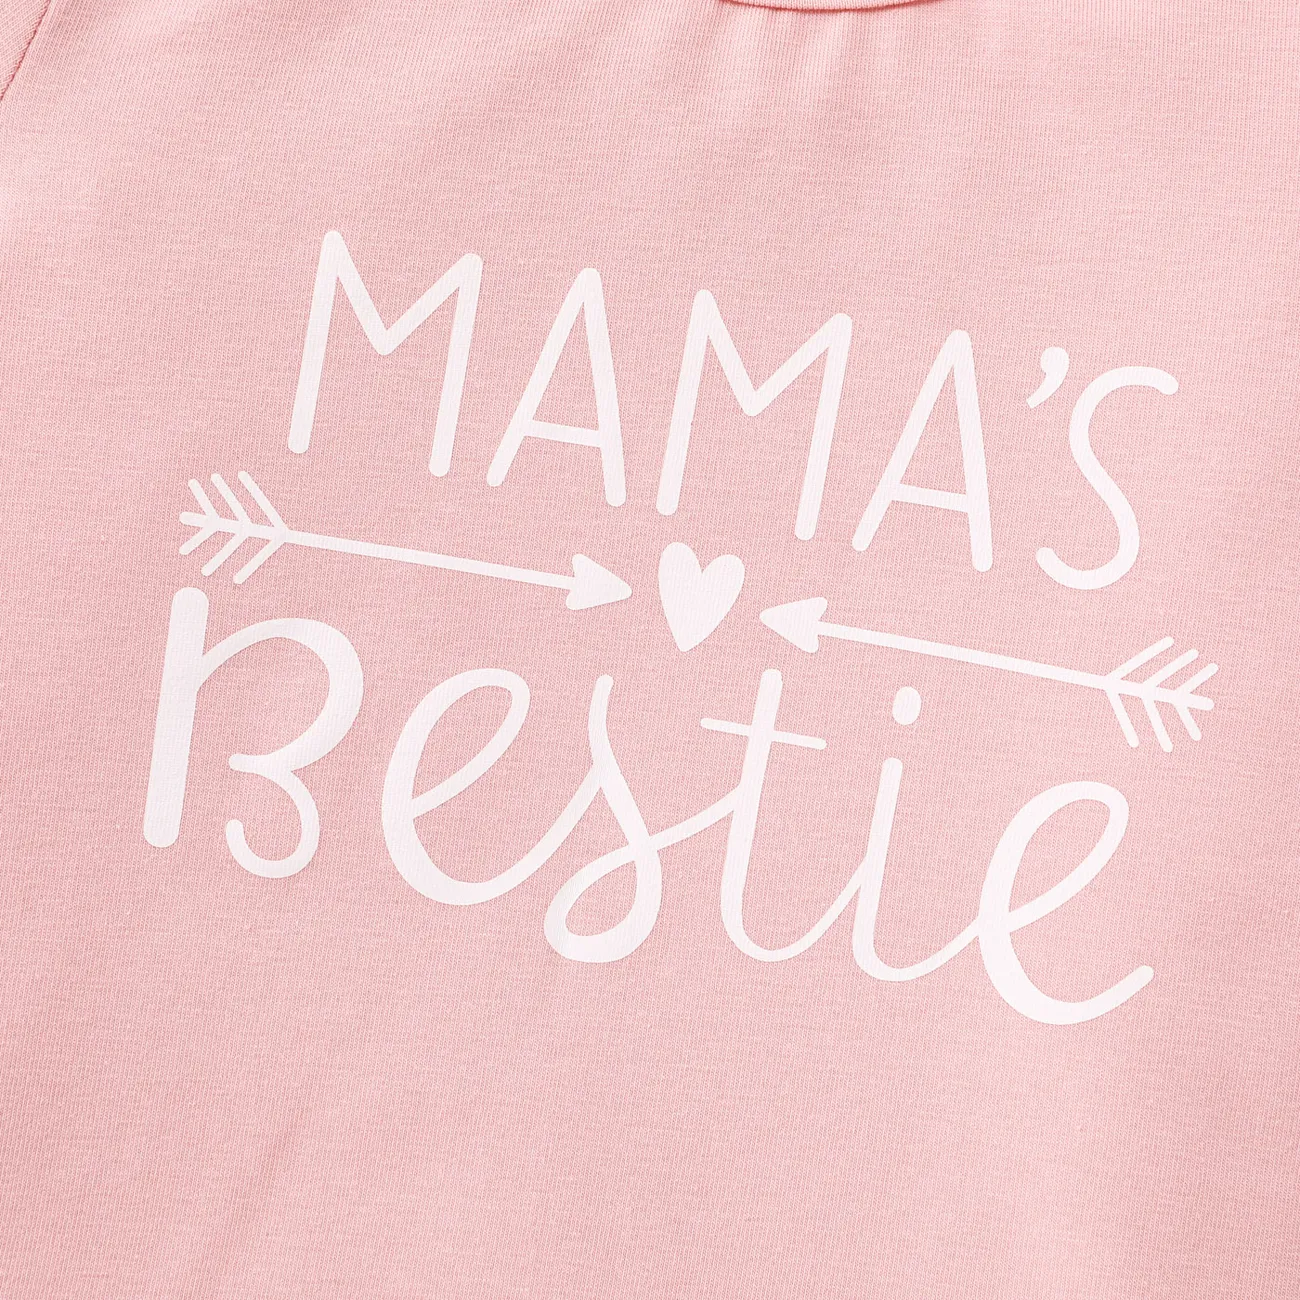 Kurzarm-Baumwoll-T-Shirt mit Buchstabenaufdruck für Kleinkinder/Kinder rosa big image 1